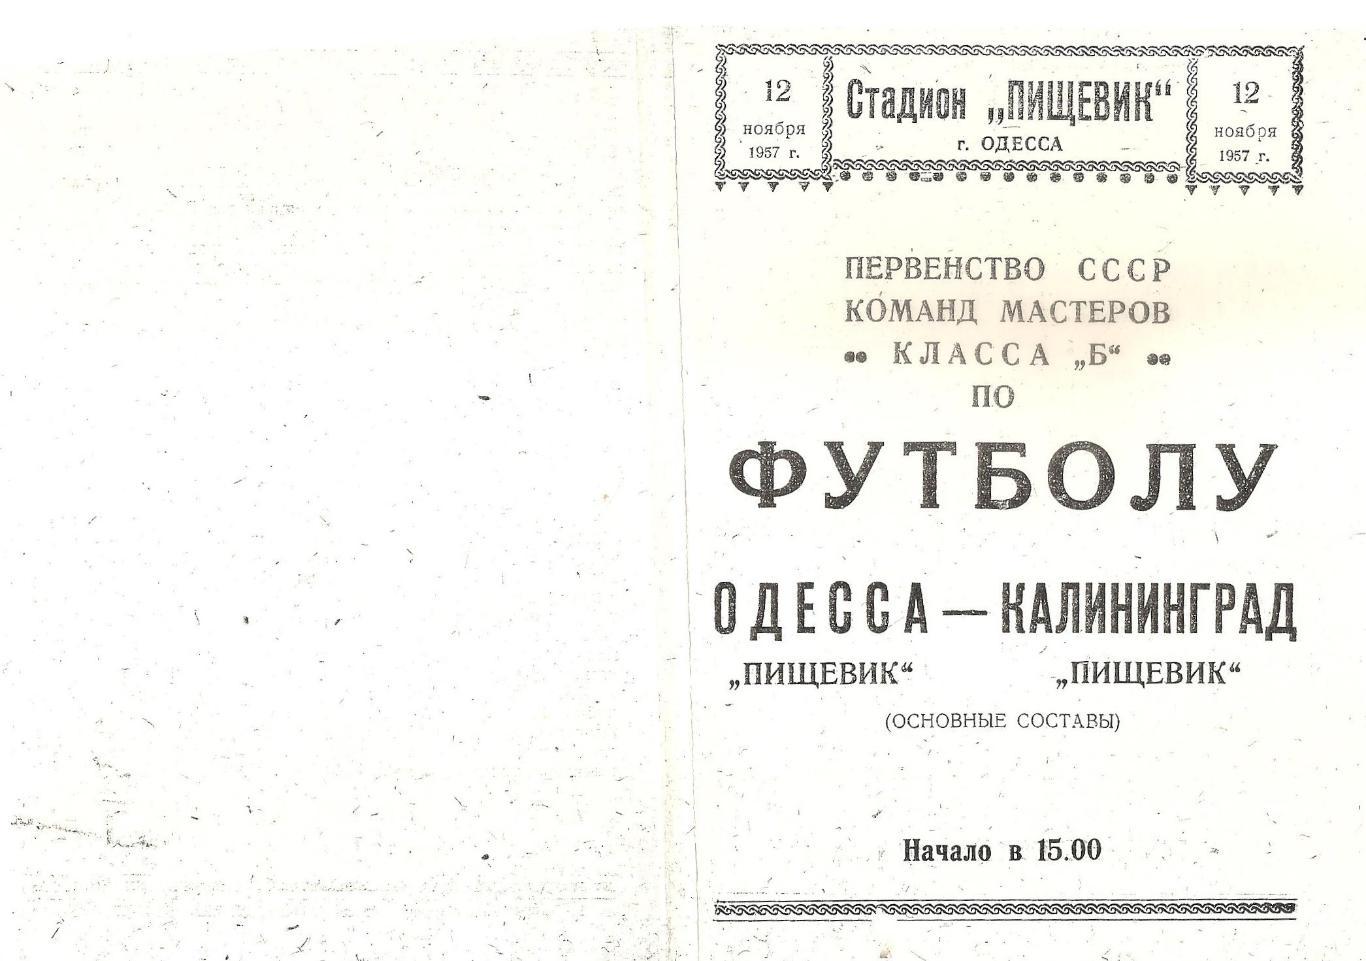 Пищевик Одесса - Пищевик Калининград 12.11.1955г. (копия)